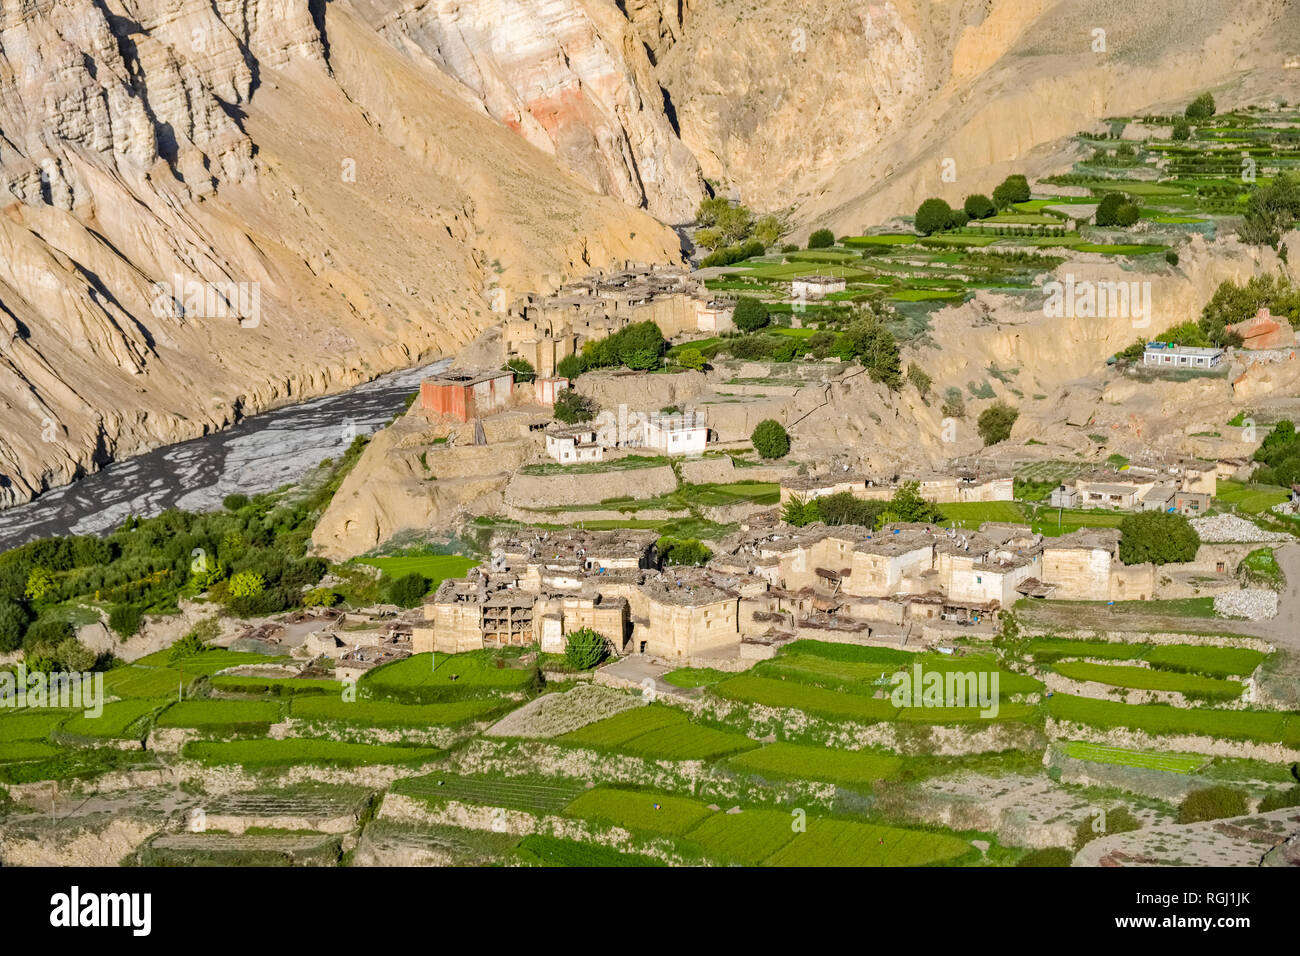 Panoramica vista aerea sulle case e il settore agricolo nei dintorni del villaggio con verdi campi di orzo, colorato ripide pareti rocciose in dista Foto Stock